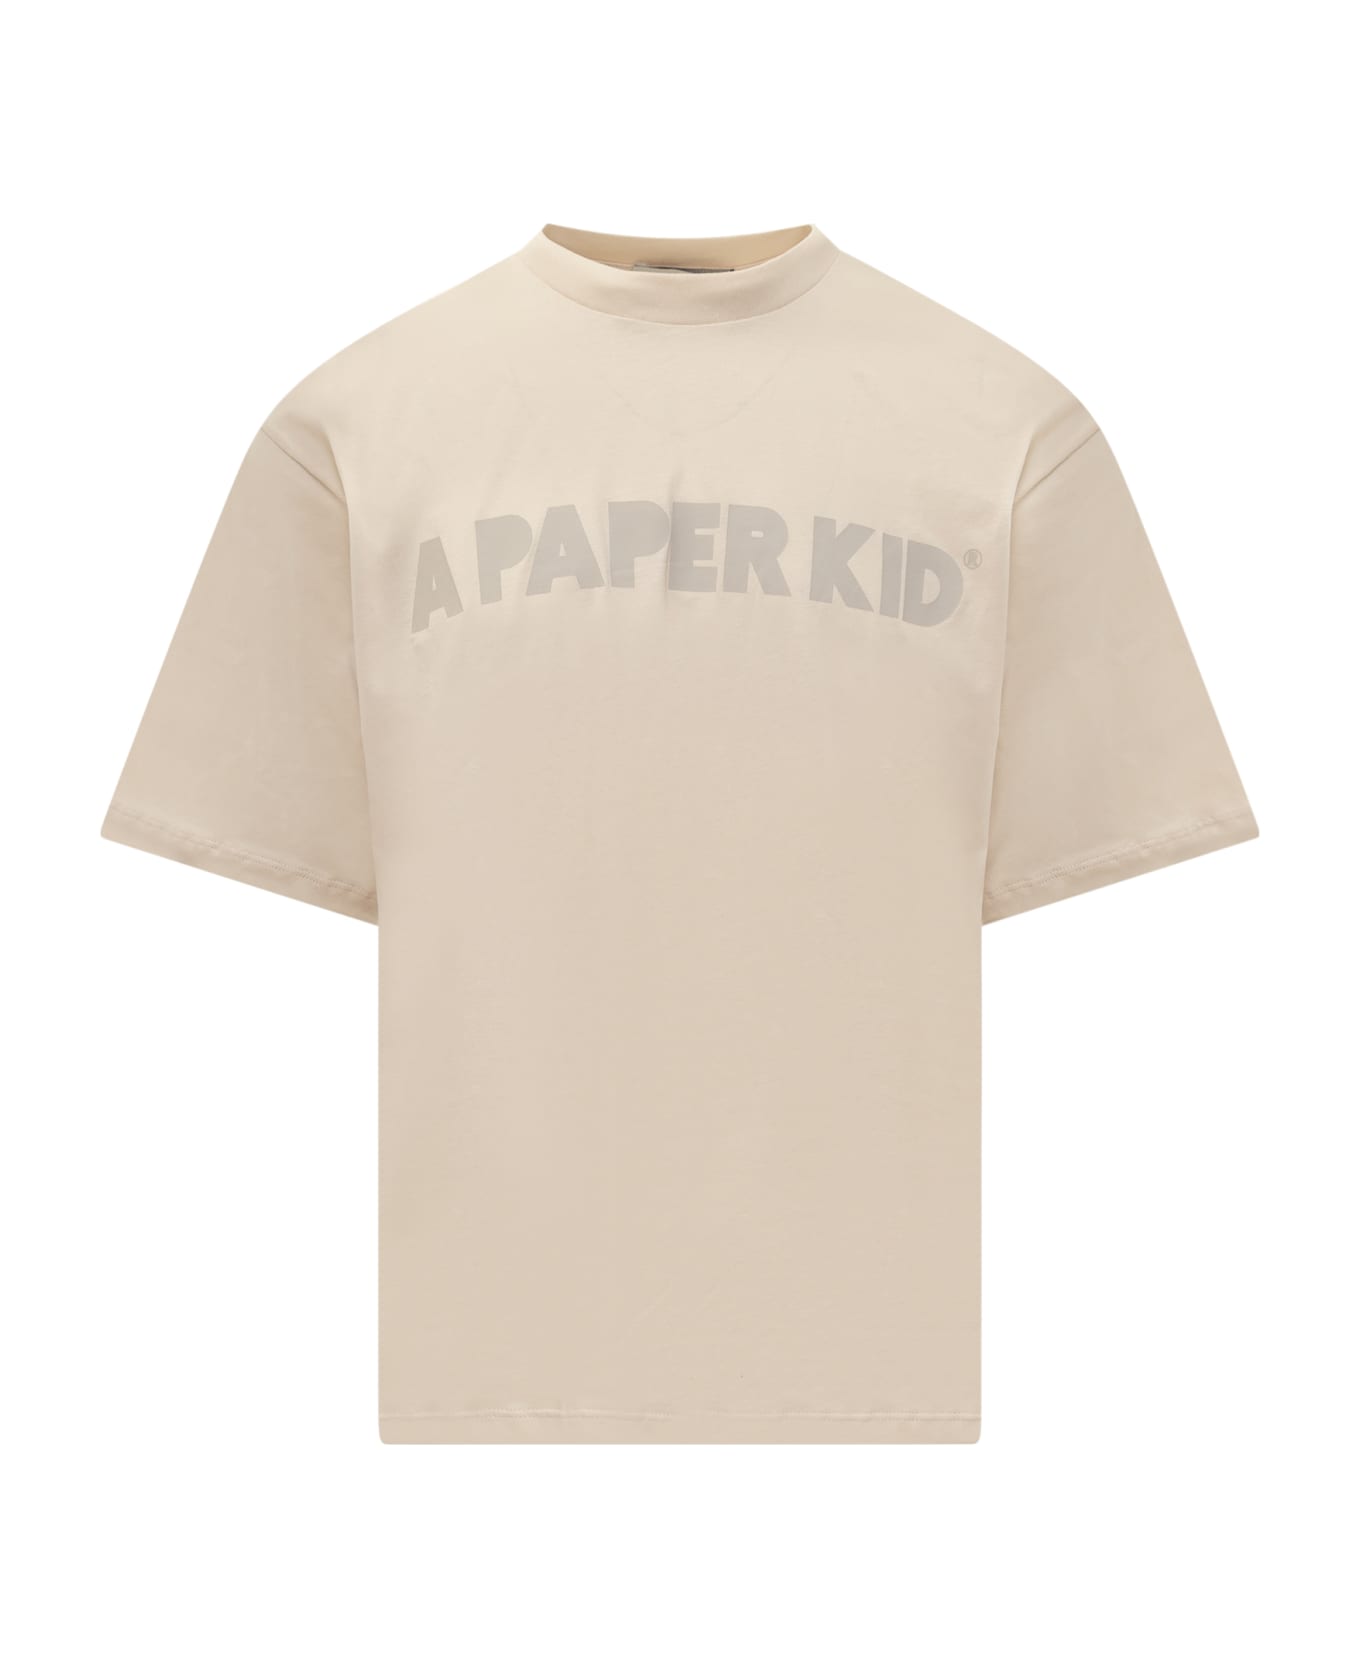 A Paper Kid Logo Print T-shirt - SABBIA/SAND